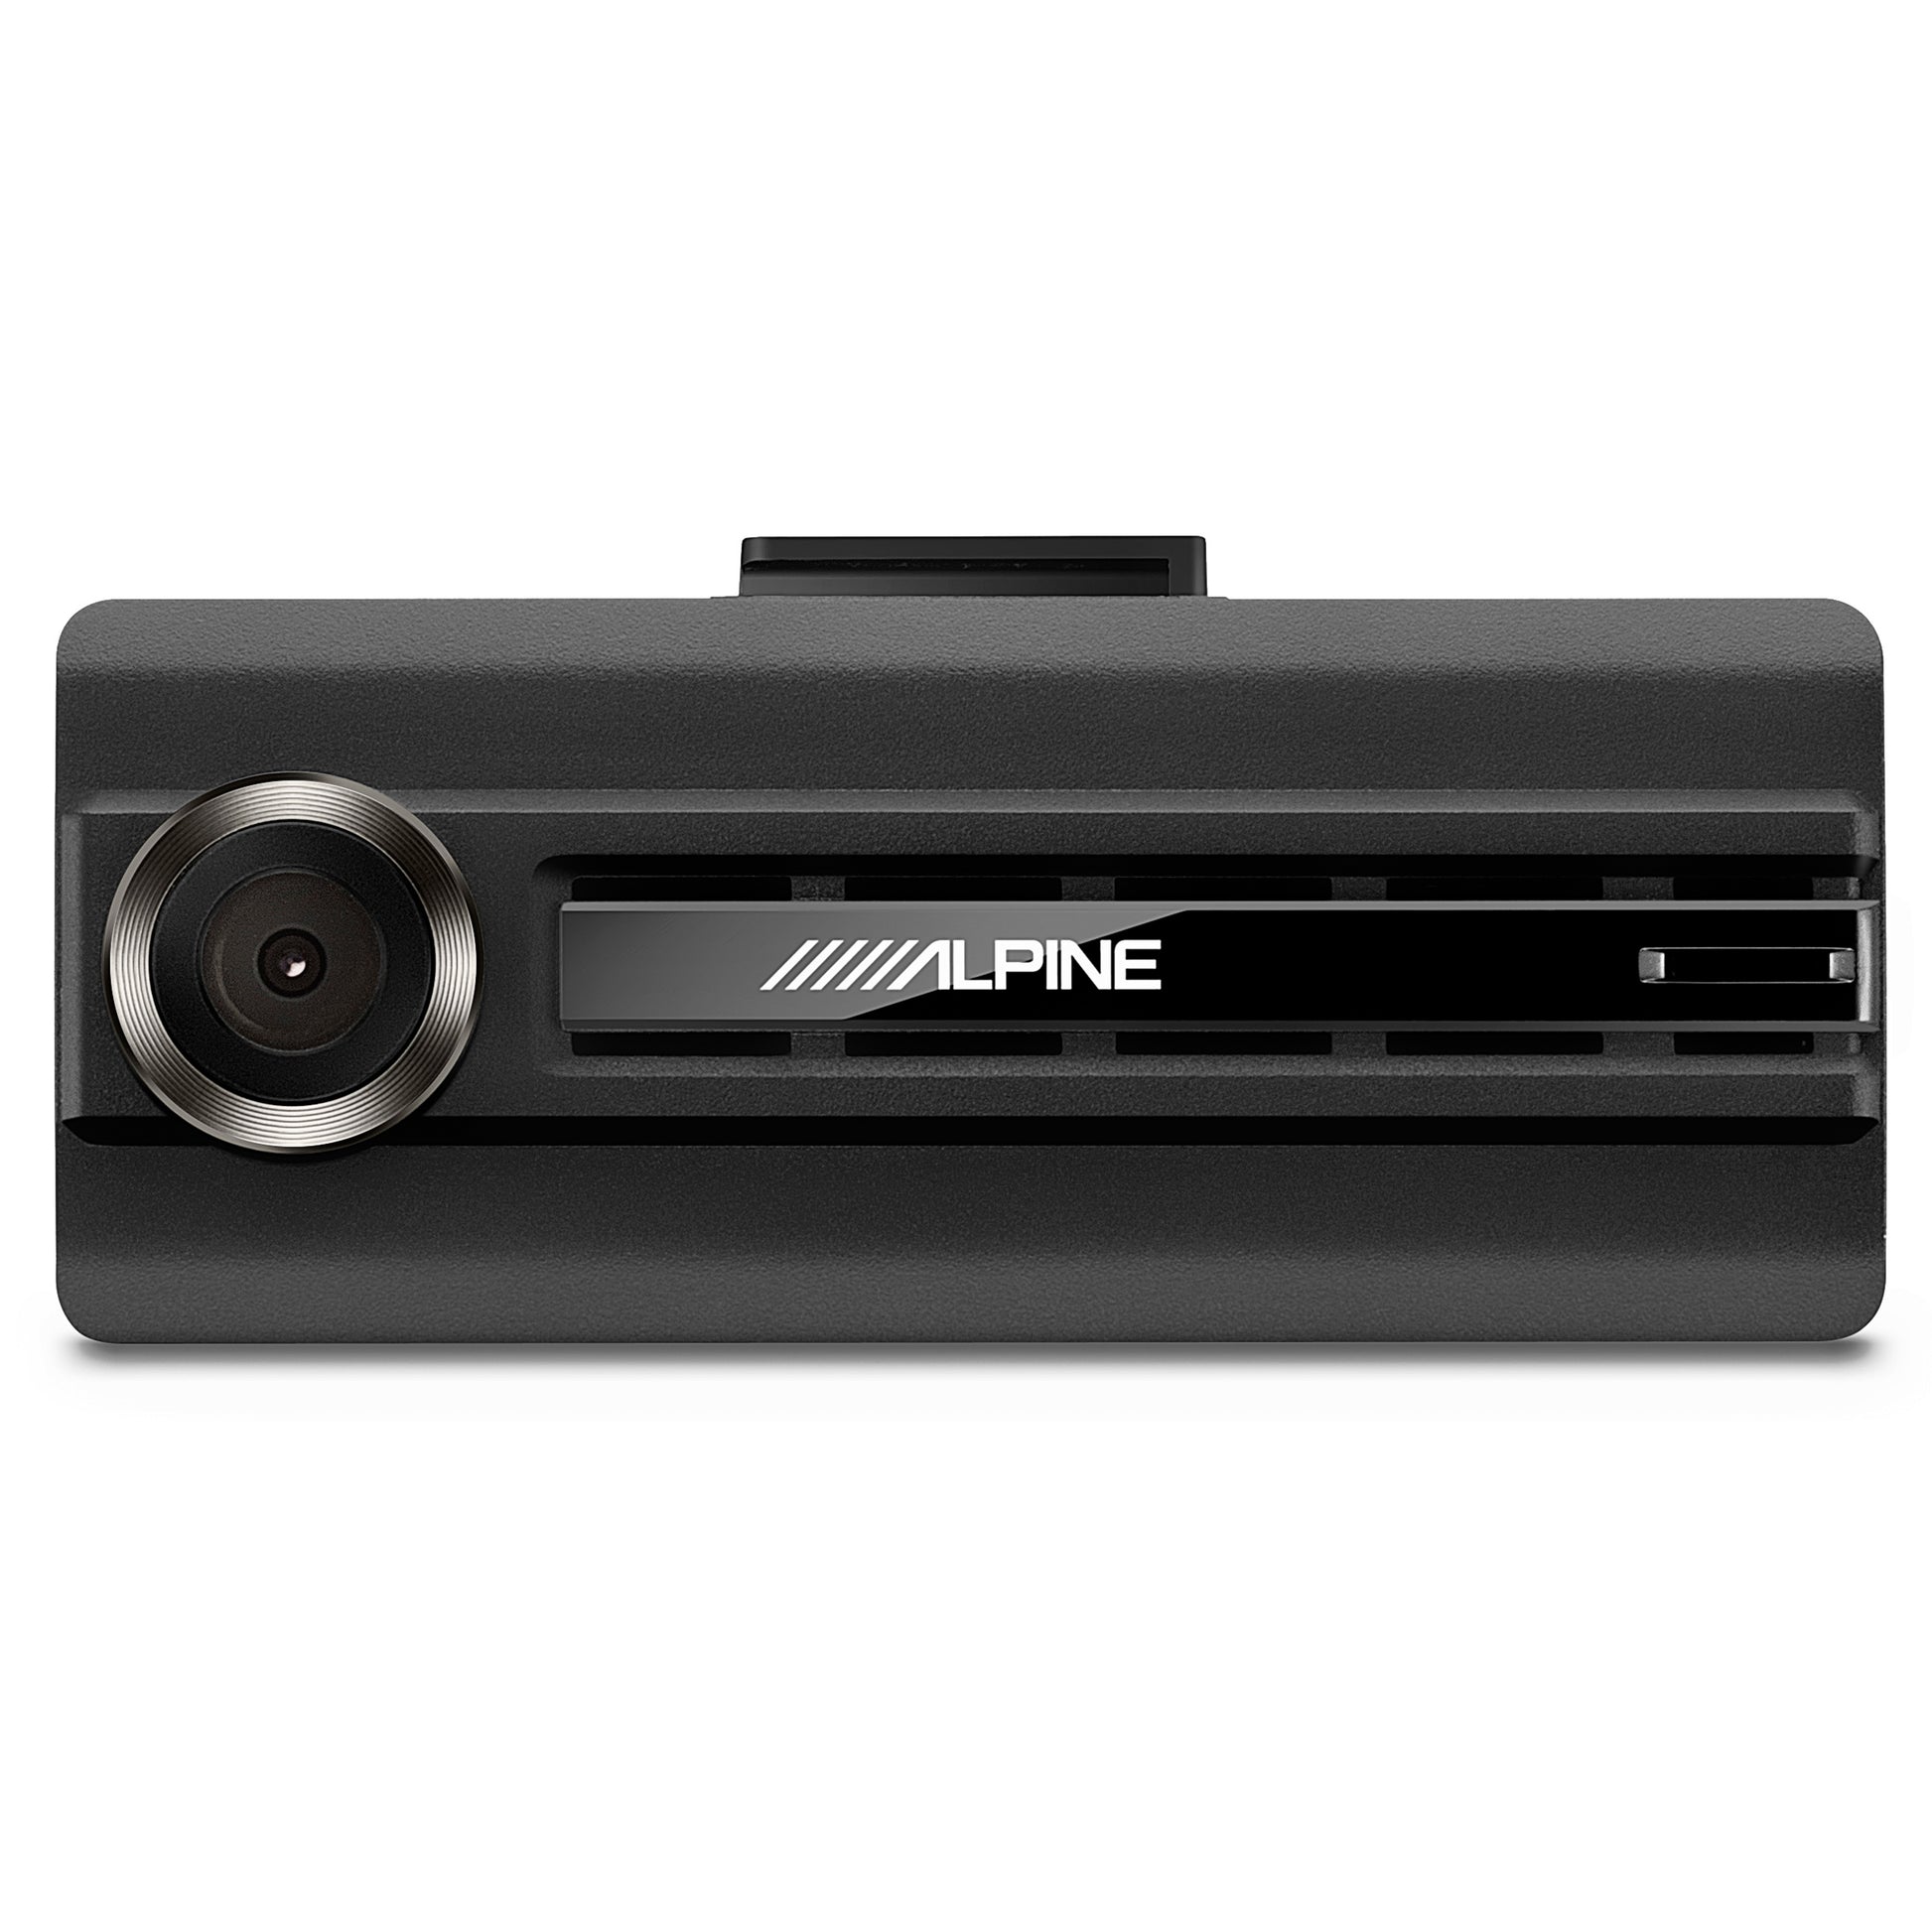 Alpine DVR-C310R WiFi Enabled Dash Camera